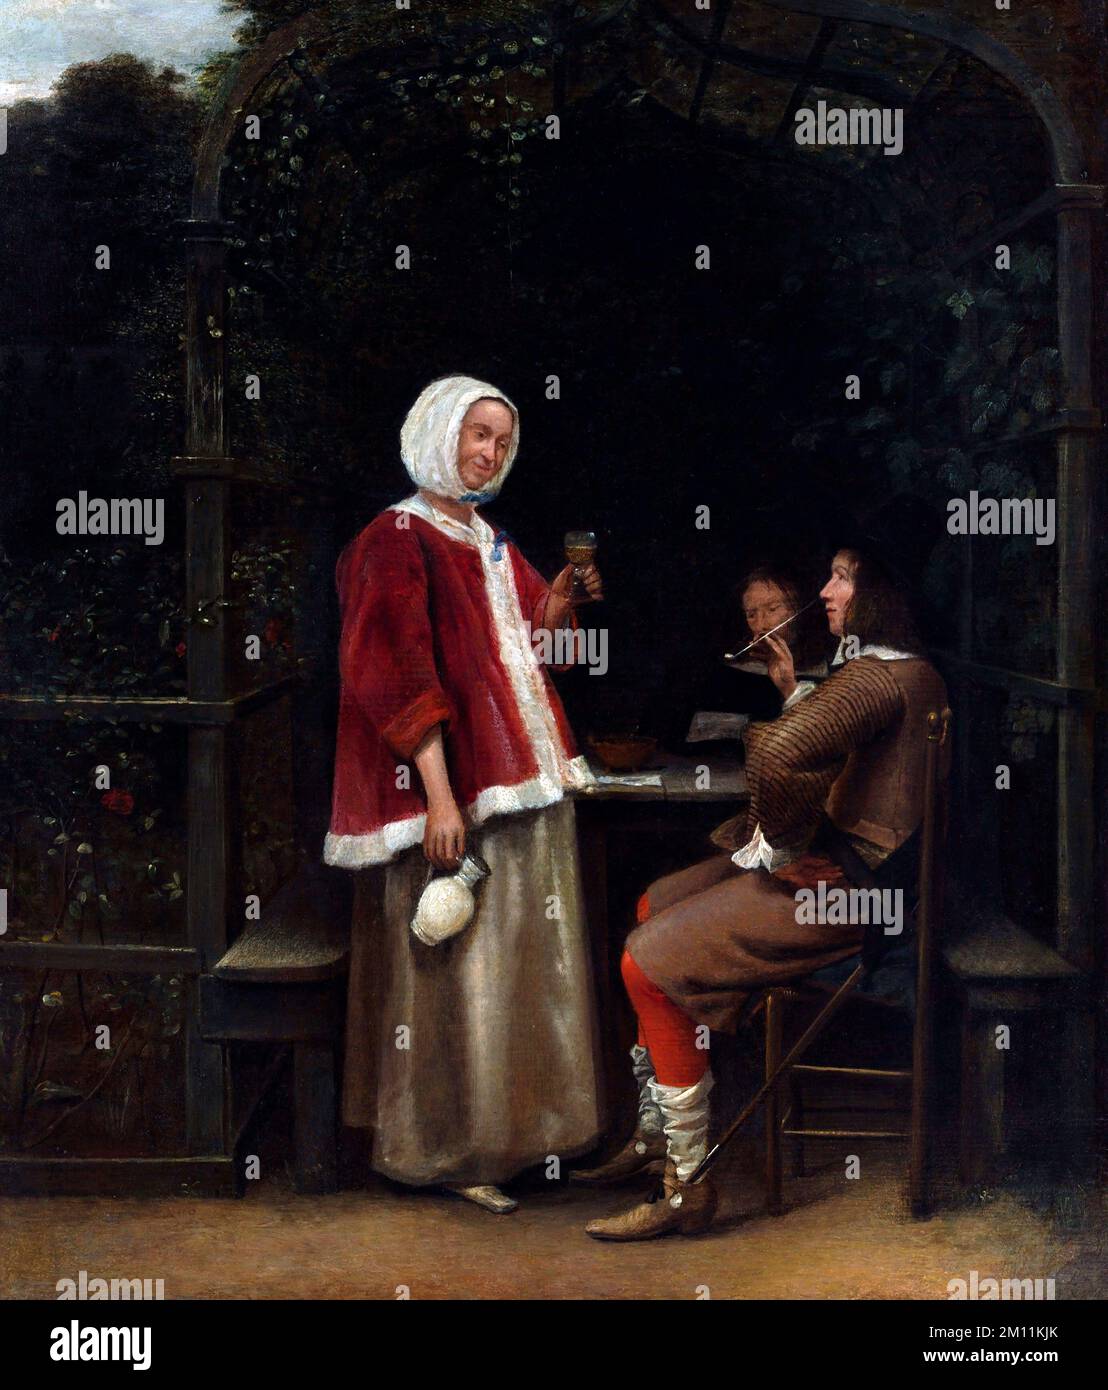 Pieter de Hooch. Gemälde mit dem Titel "A Woman and Two Men in an Arbor" des niederländischen Malers aus dem Goldenen Zeitalter, Pieter de Hooch (1629-1684), Öl auf Holz, c. 1657/8 Stockfoto